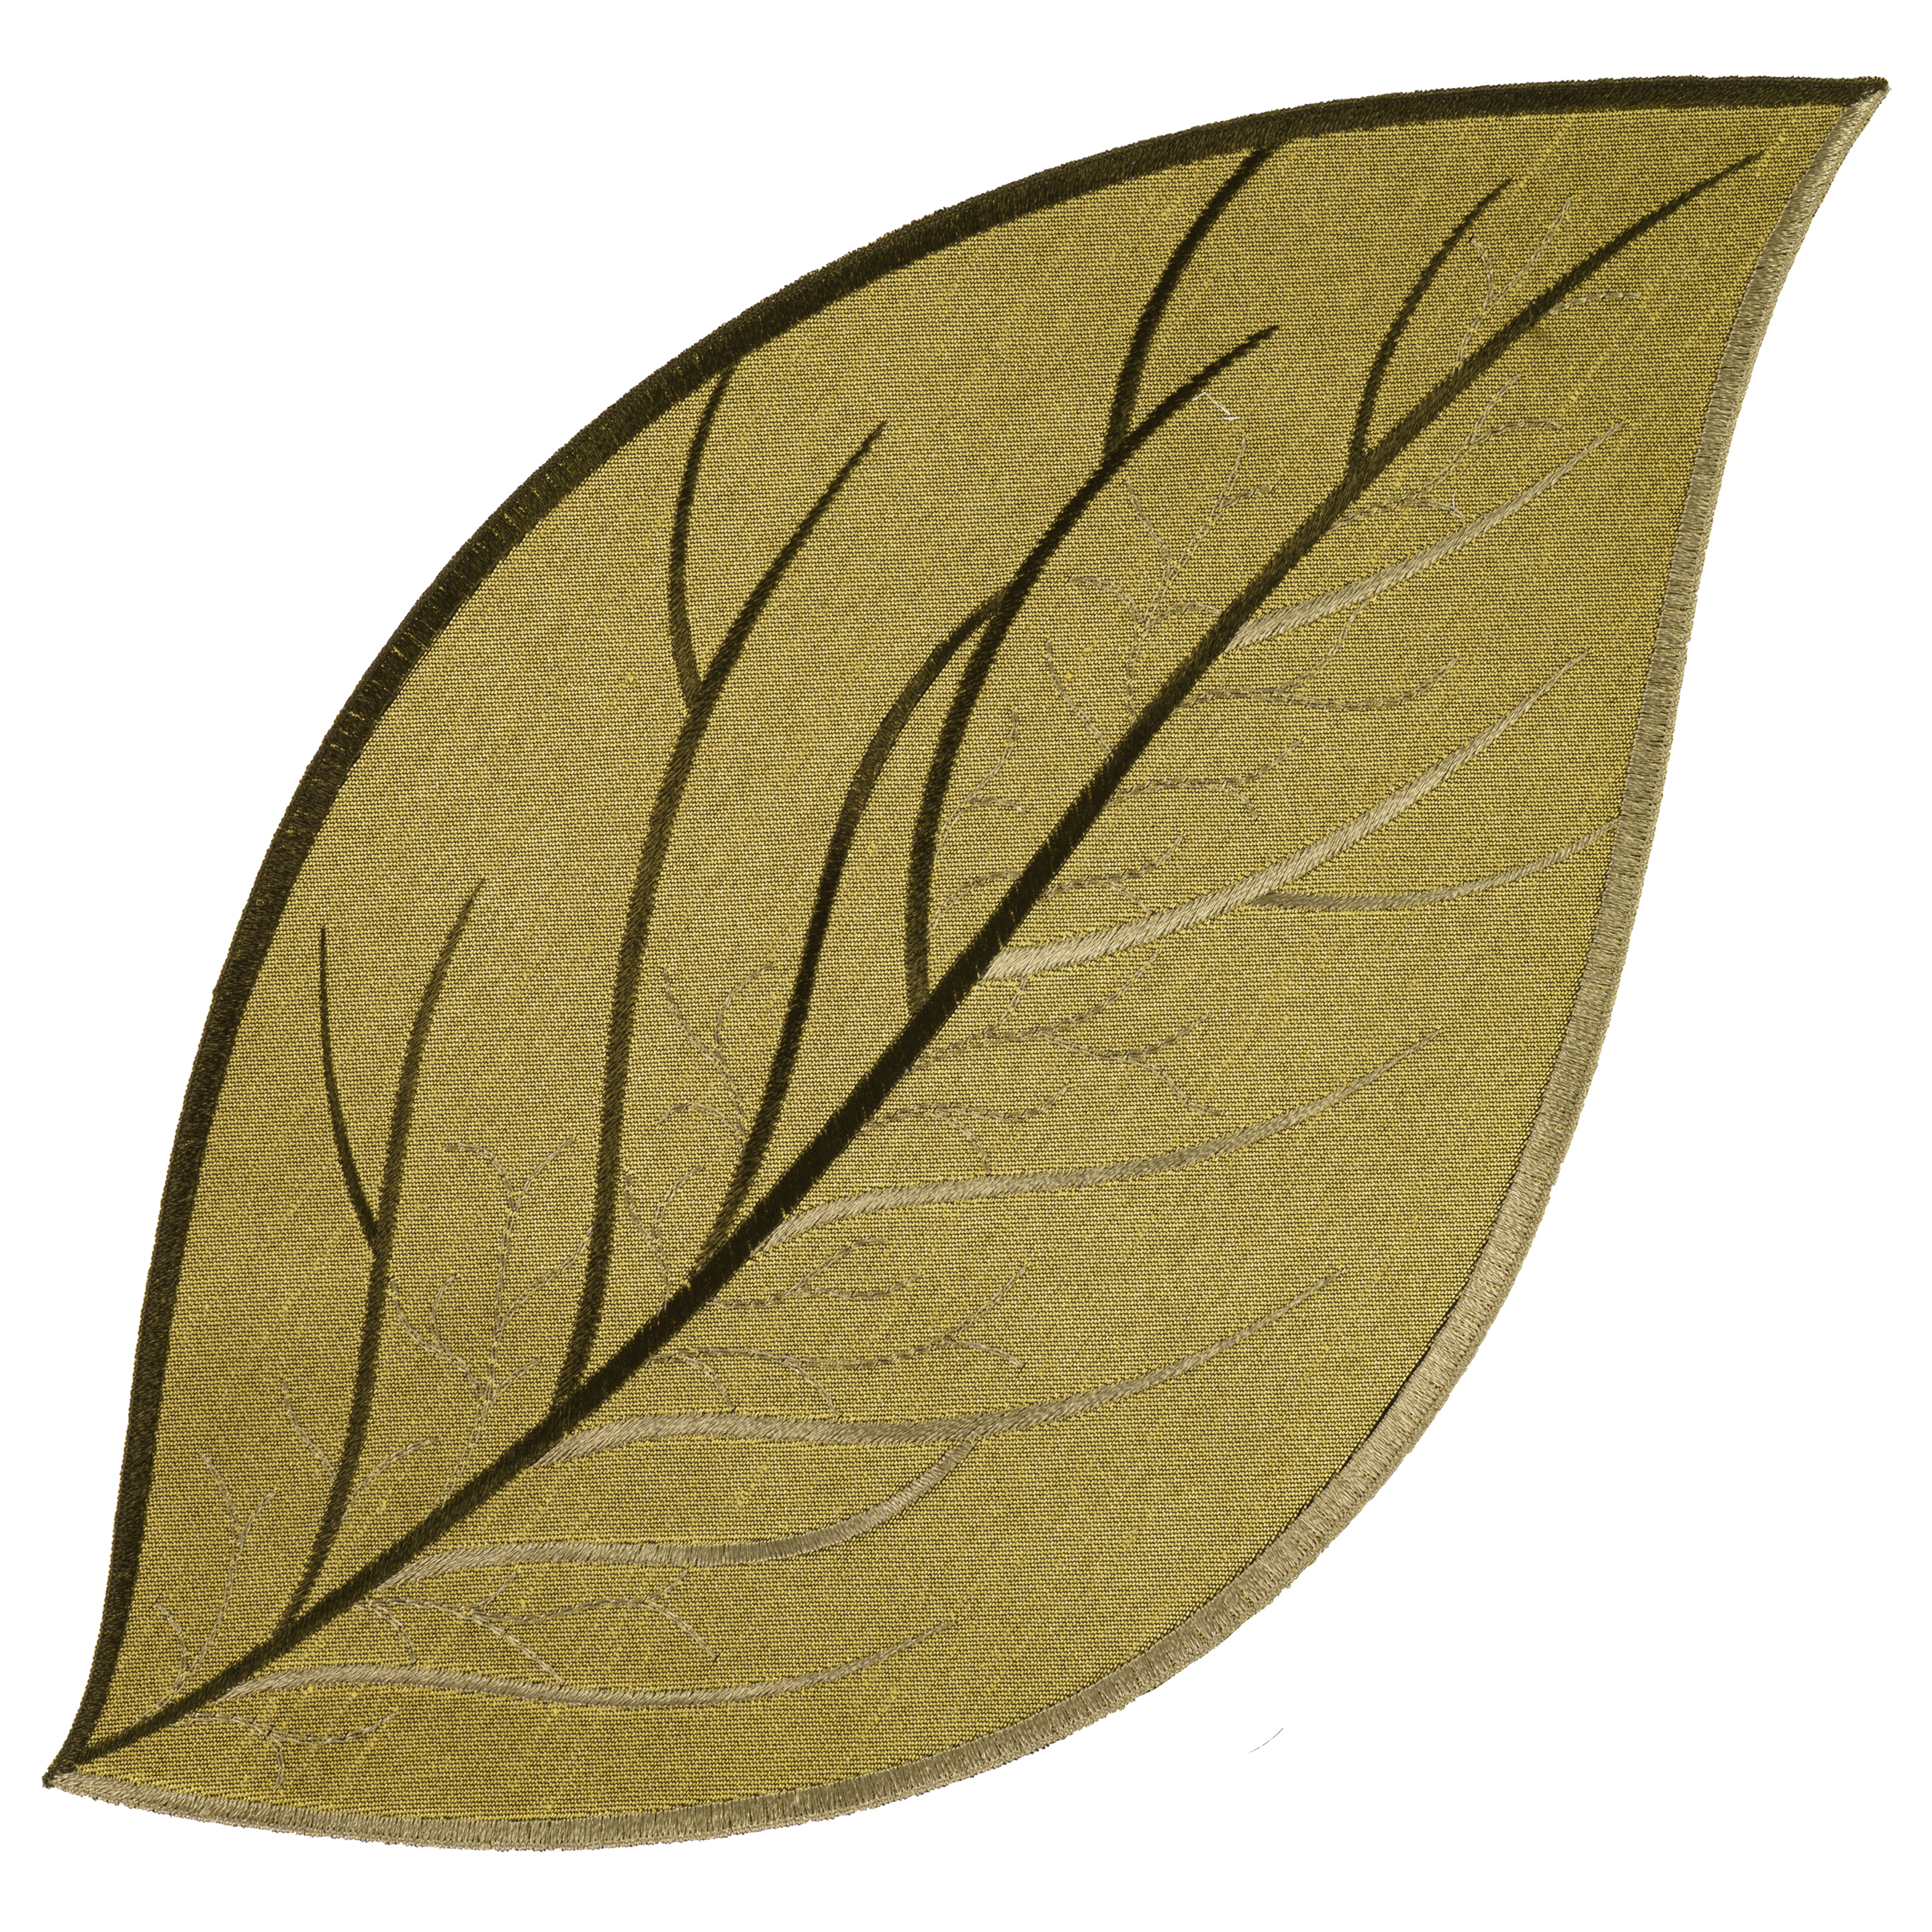 Oval eBay Grün Plauener Herbst Spitze | Deckchen Tischdecke Blatt Tischläufer Stickerei